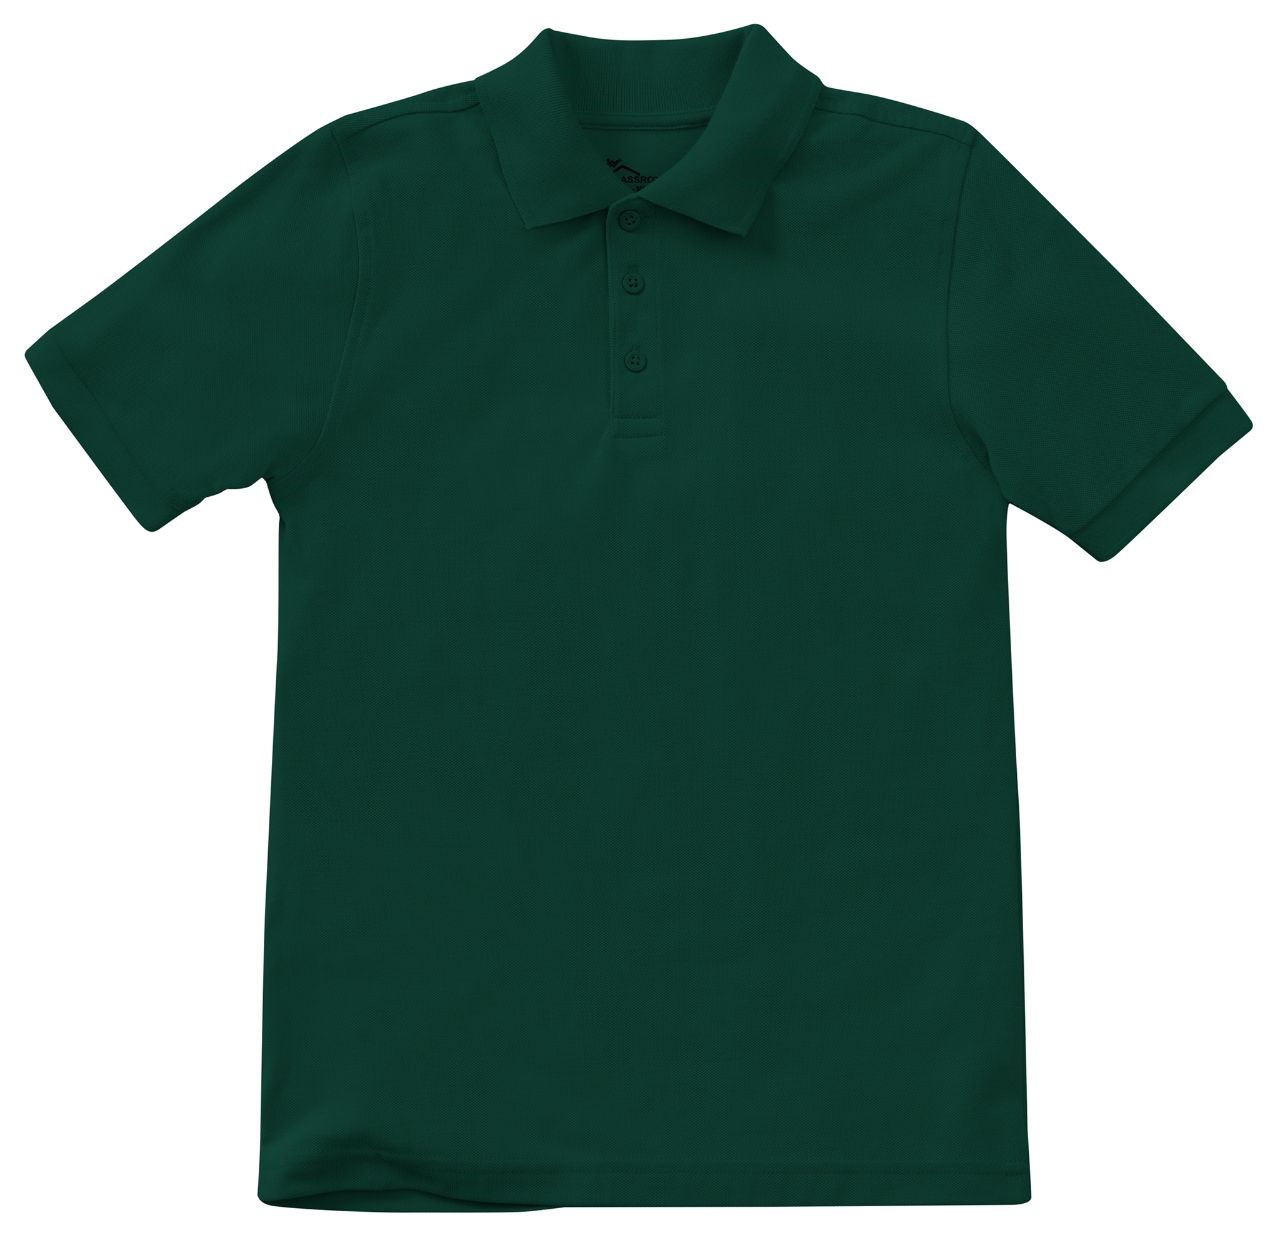 AR-Adult short sleeve pique polo shirt with logo